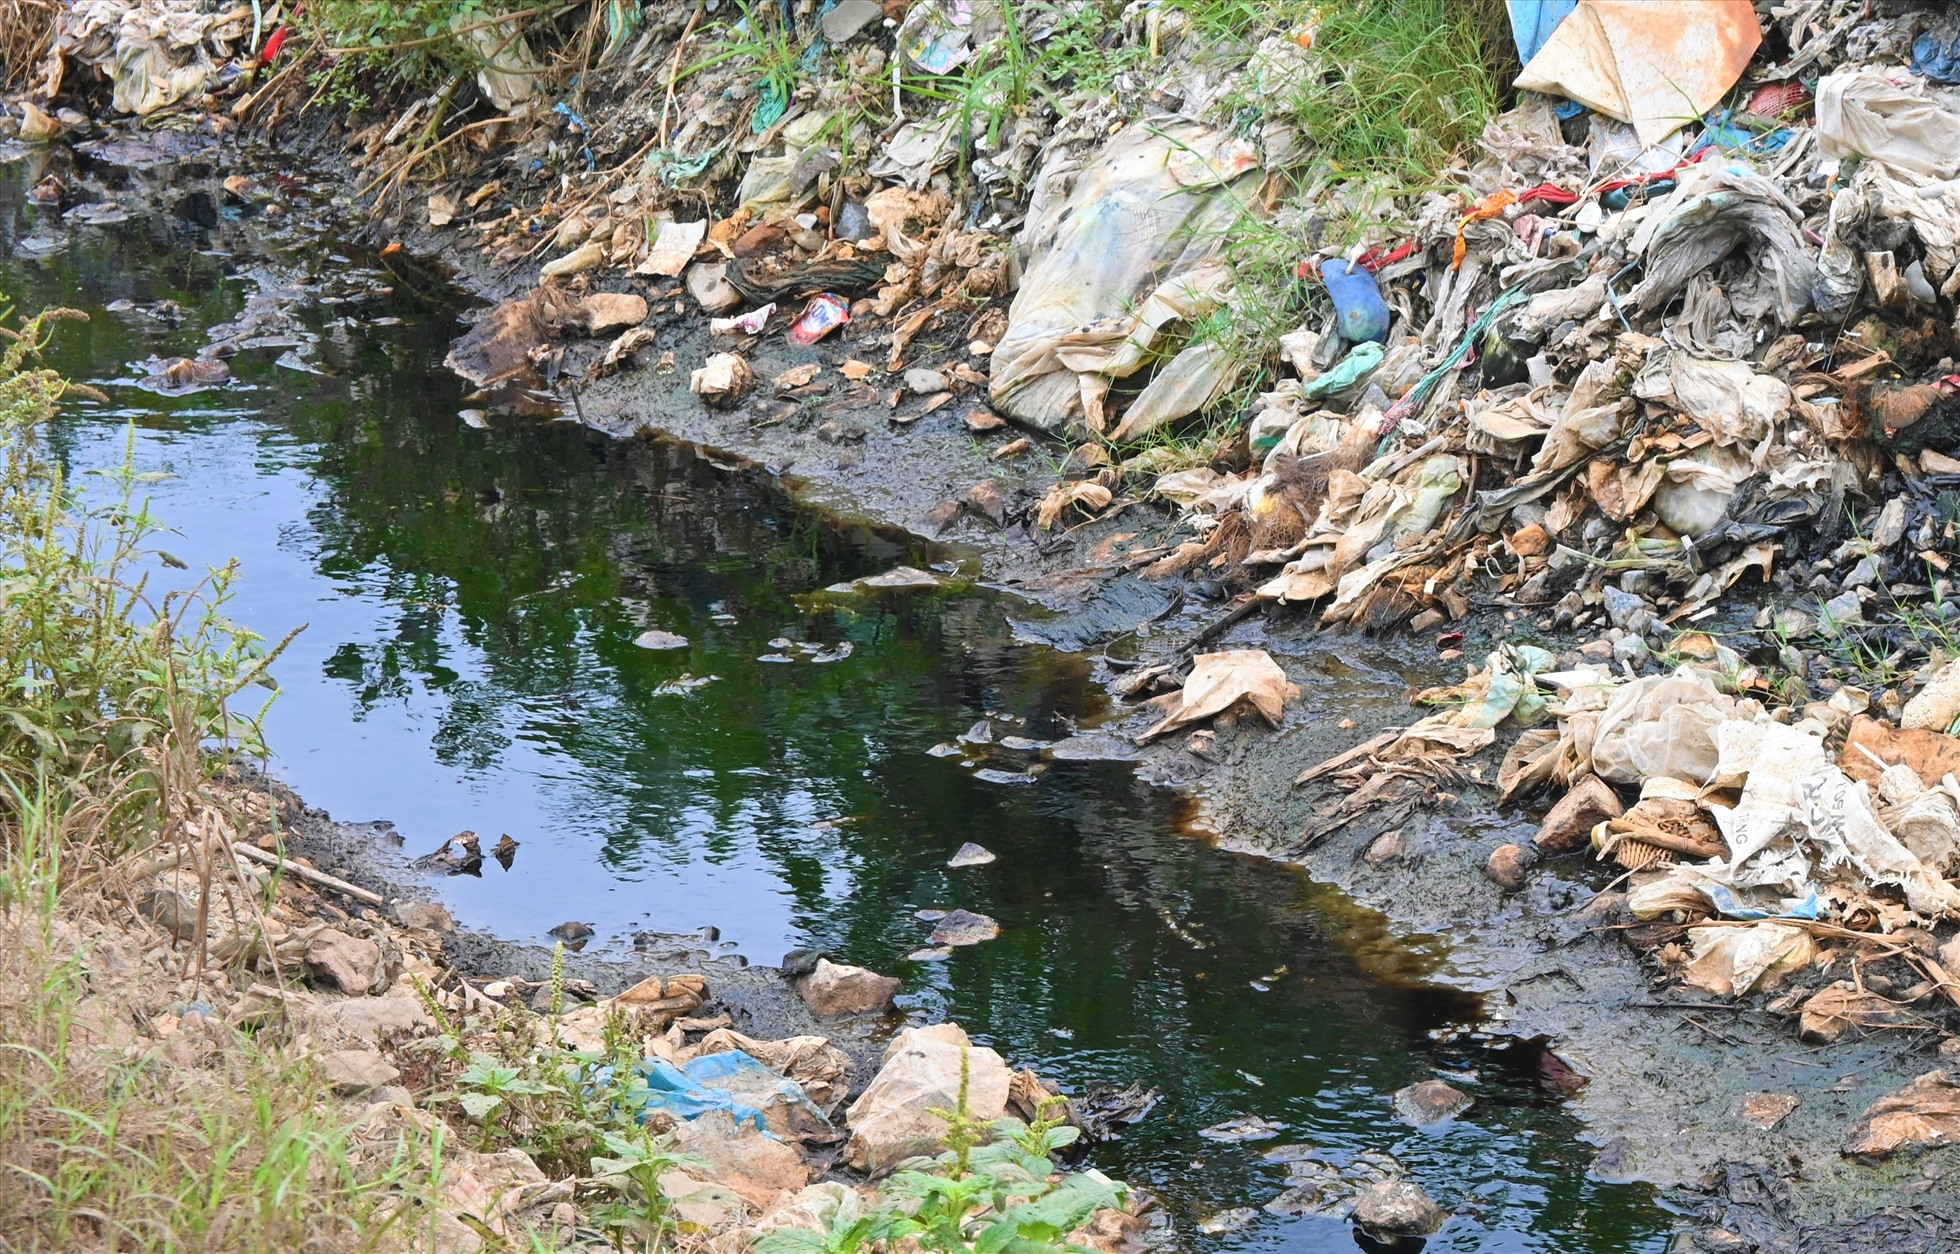 Do không có nhà máy xử lý nên bãi rác bị quá tải, bốc mùi hôi thối, nguồn nước ô nhiễm không đảm bảo môi trường.